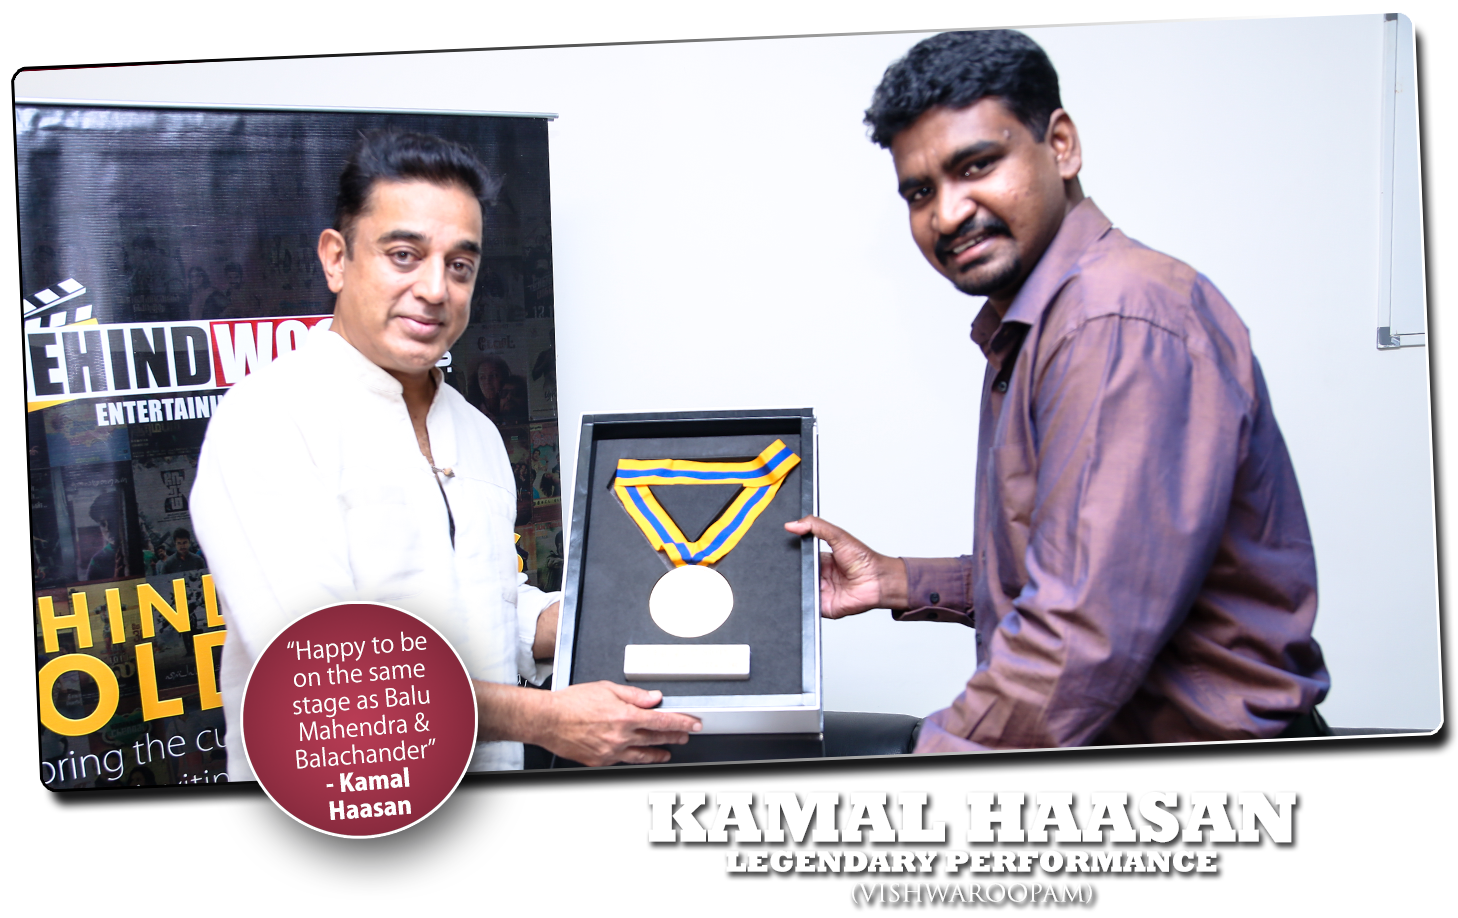 KAMAL HAASAN - Behindwoods Gold Medal Winner 2013